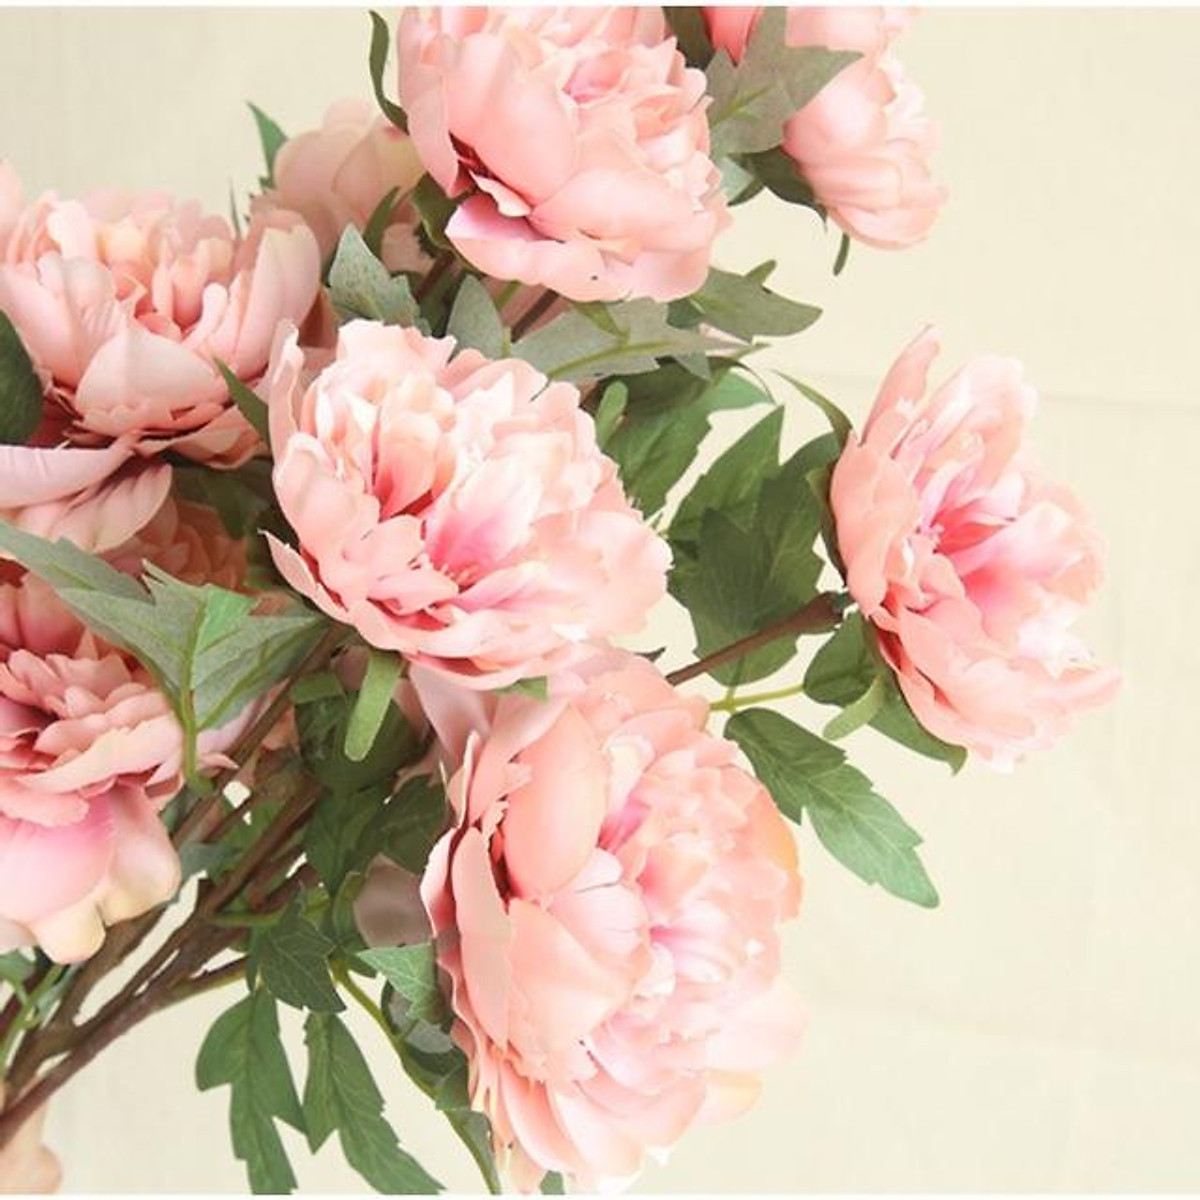 Hoa giả - Cành hoa mẫu đơn lụa 3 bông xinh xắn decor chụp ảnh